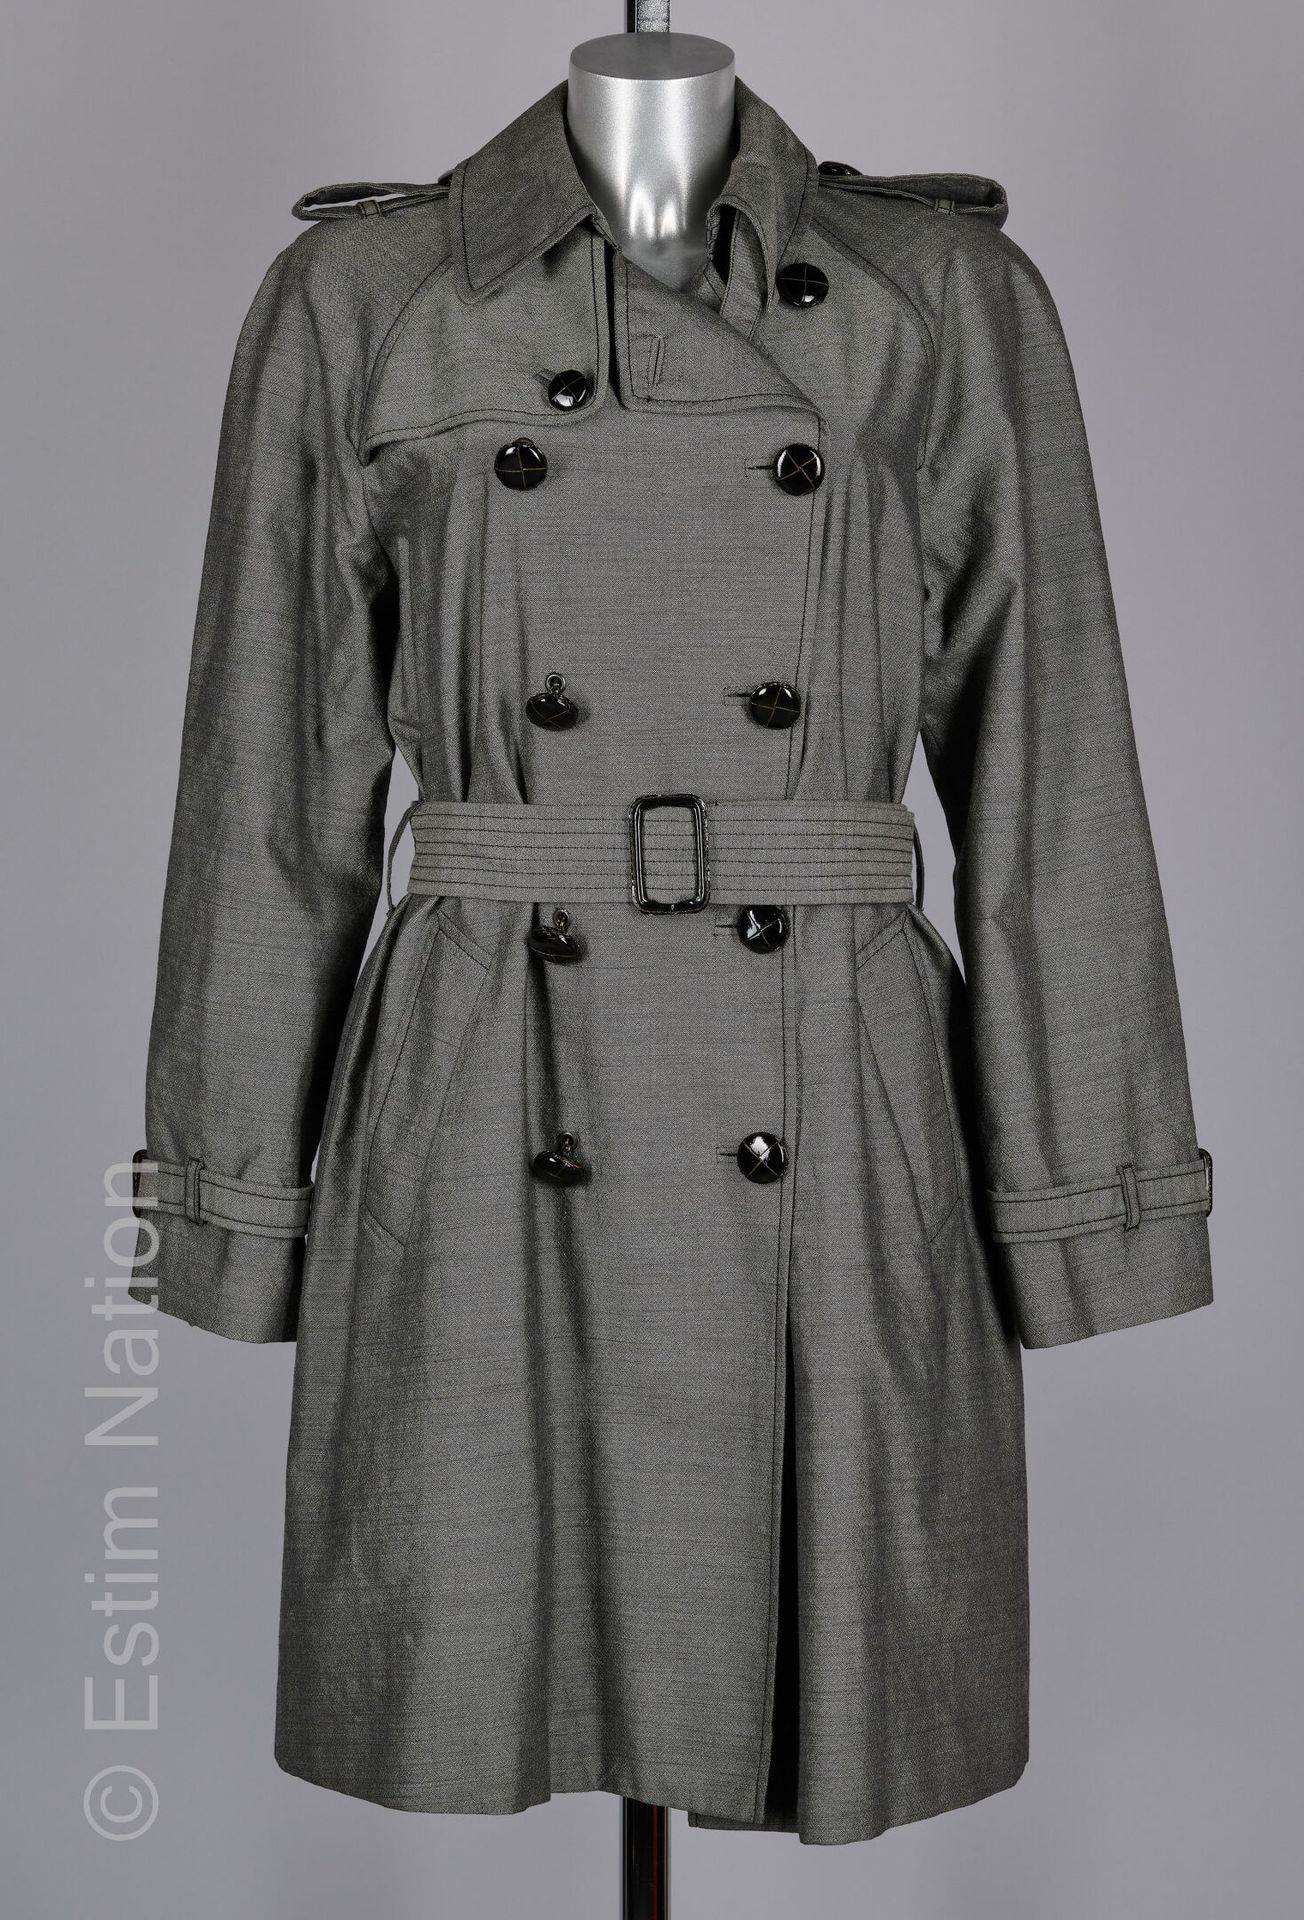 JEAN PAUL GAULTIER FEMME TRENCH in grey mottled wool, patent leather double brea&hellip;